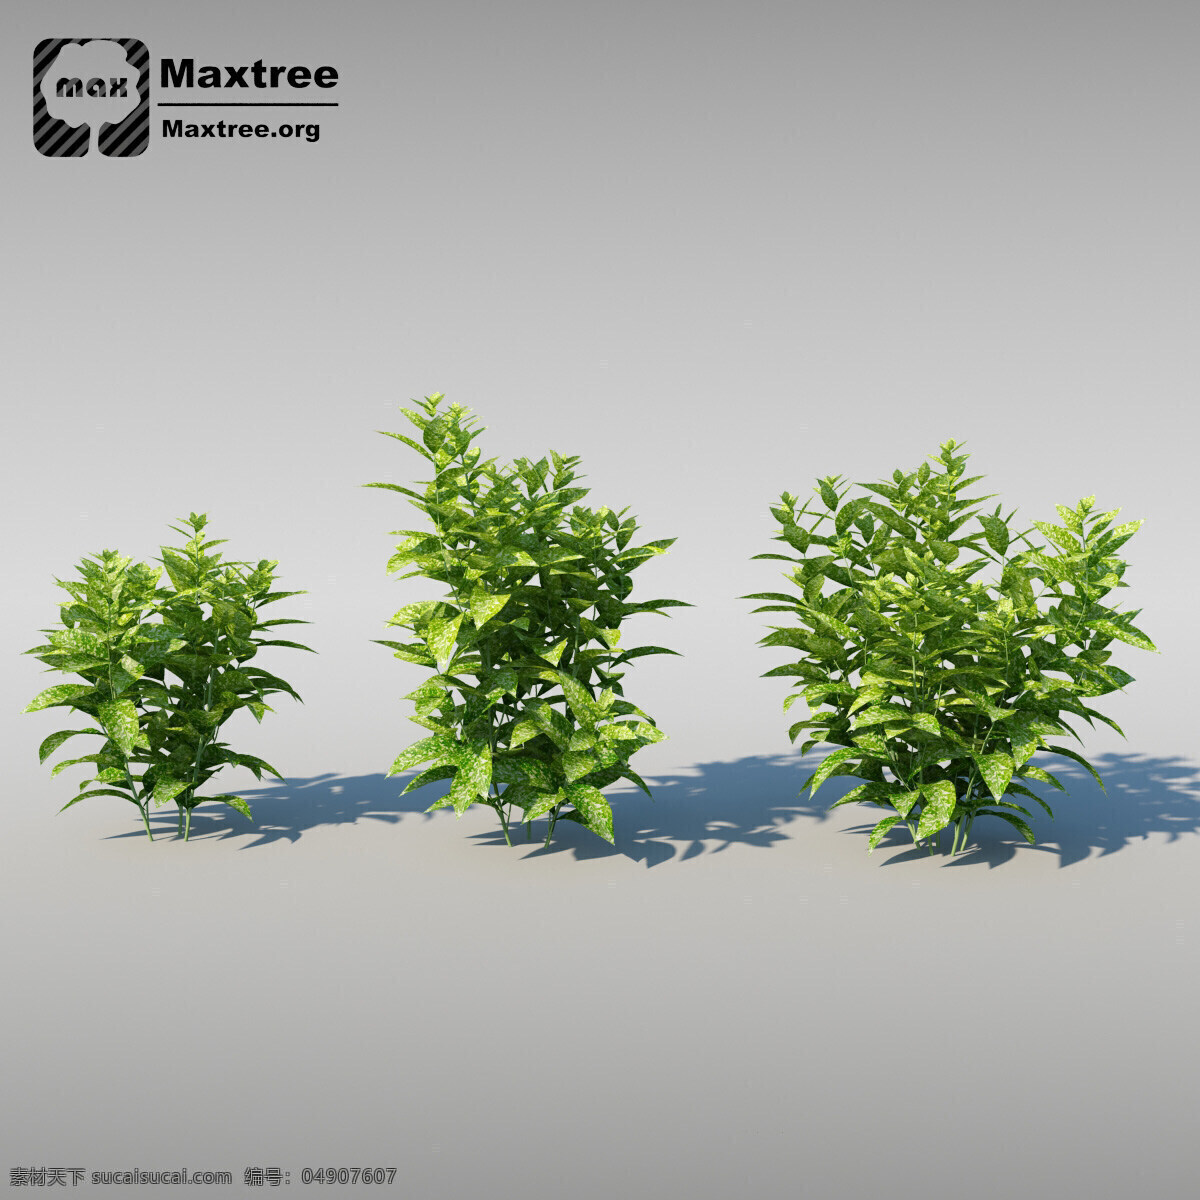 3d 灌木 模型 效果图 模型素材 3d渲染 3d模型 灌木模型